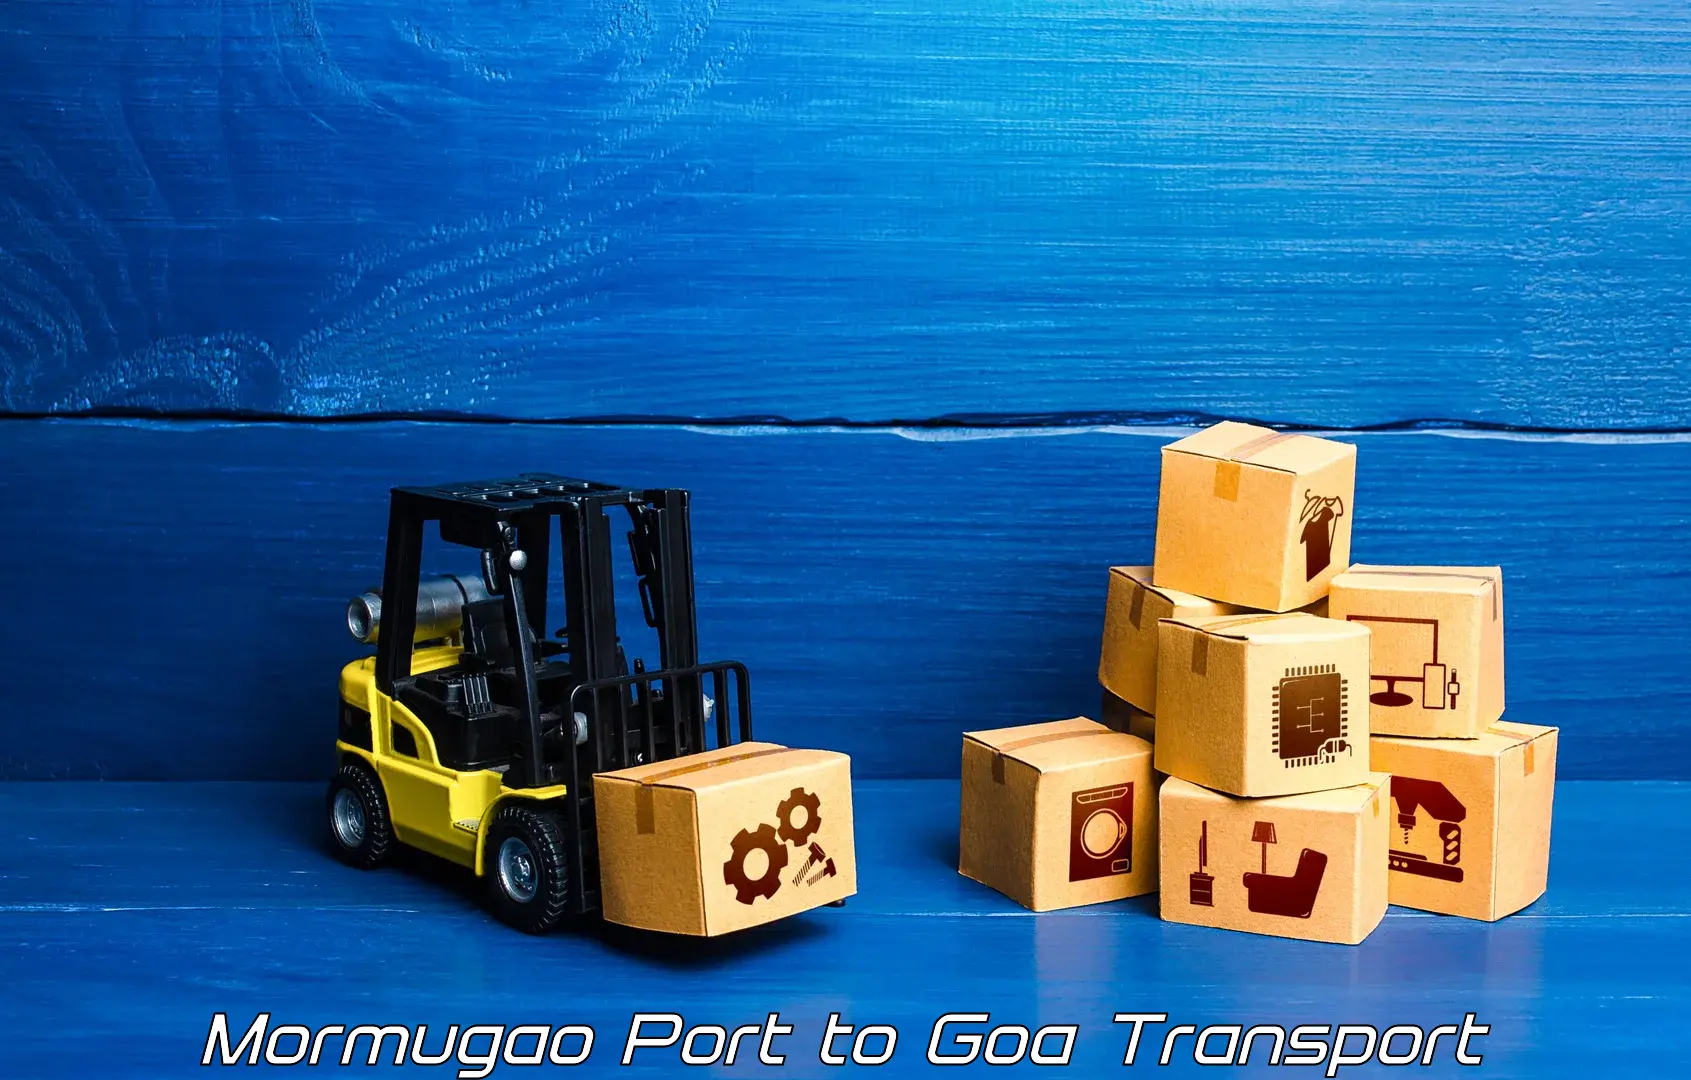 Nationwide transport services Mormugao Port to Canacona